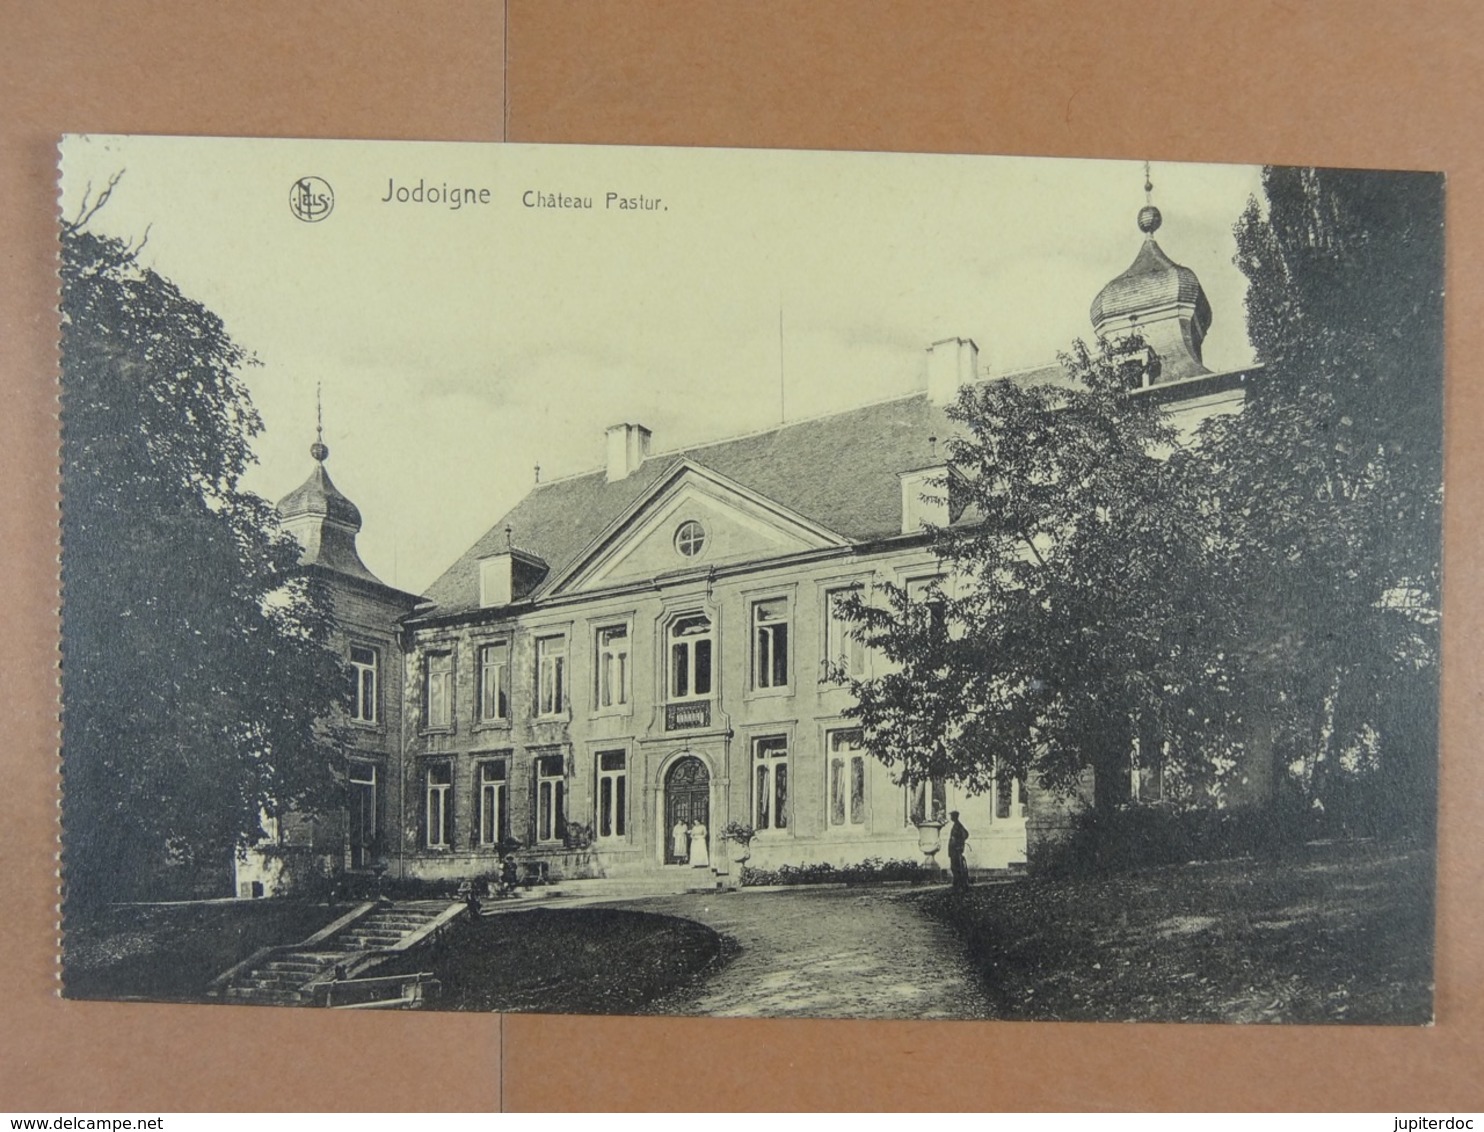 Jodoigne Château Pastur - Geldenaken